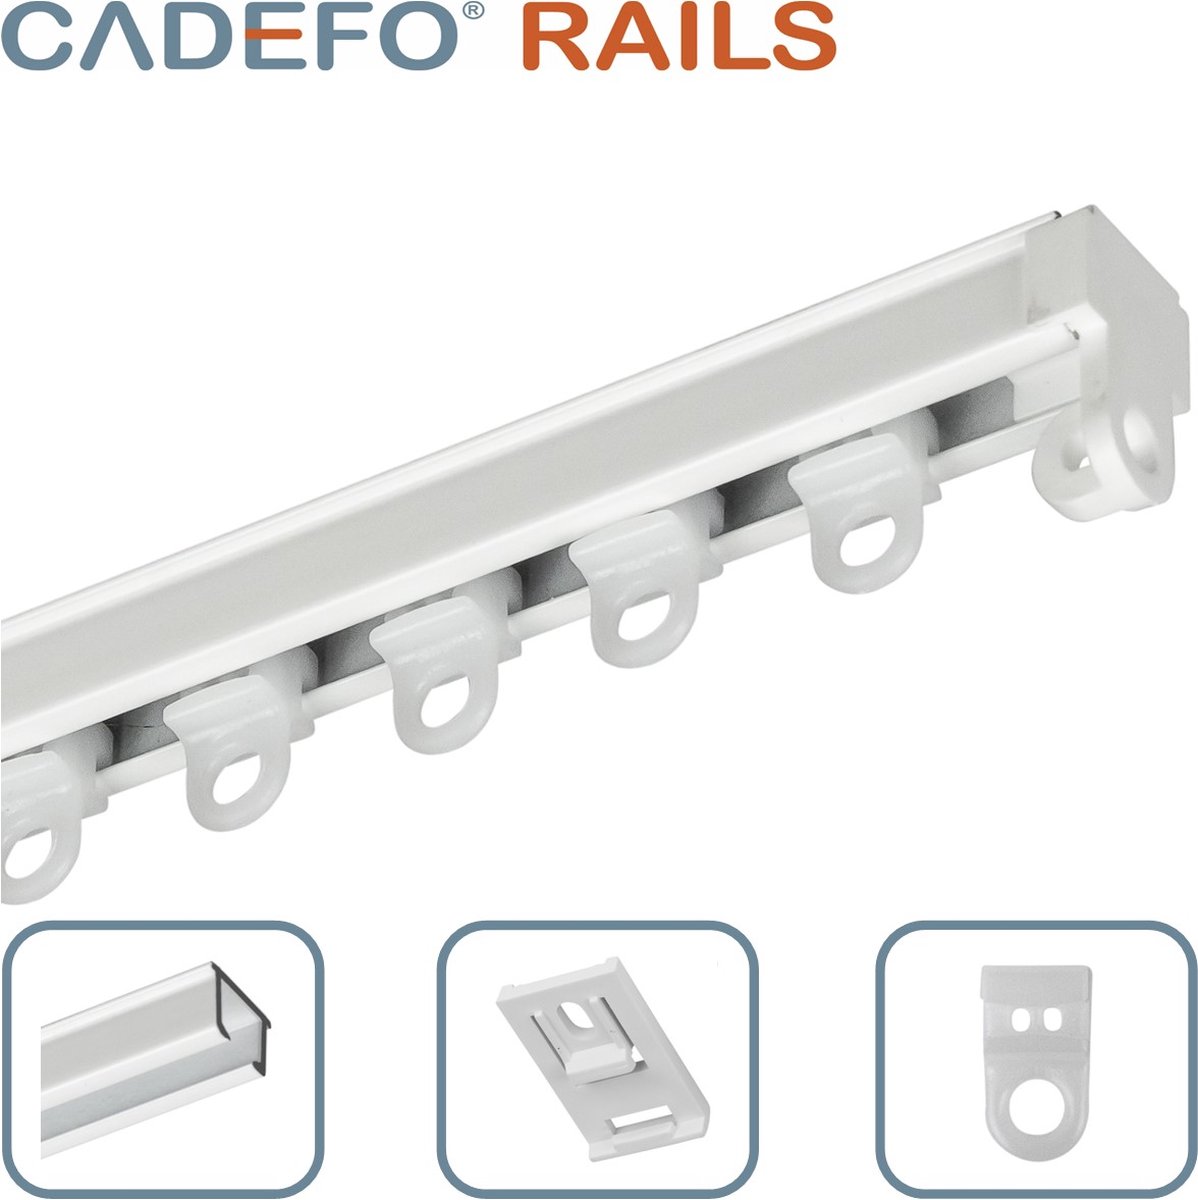 CADEFO RAILS (351 - 400 cm) Gordijnrails - Compleet op maat! - UIT 1 STUK - Leverbaar tot 6 meter - Plafondbevestiging - Lengte 362 cm